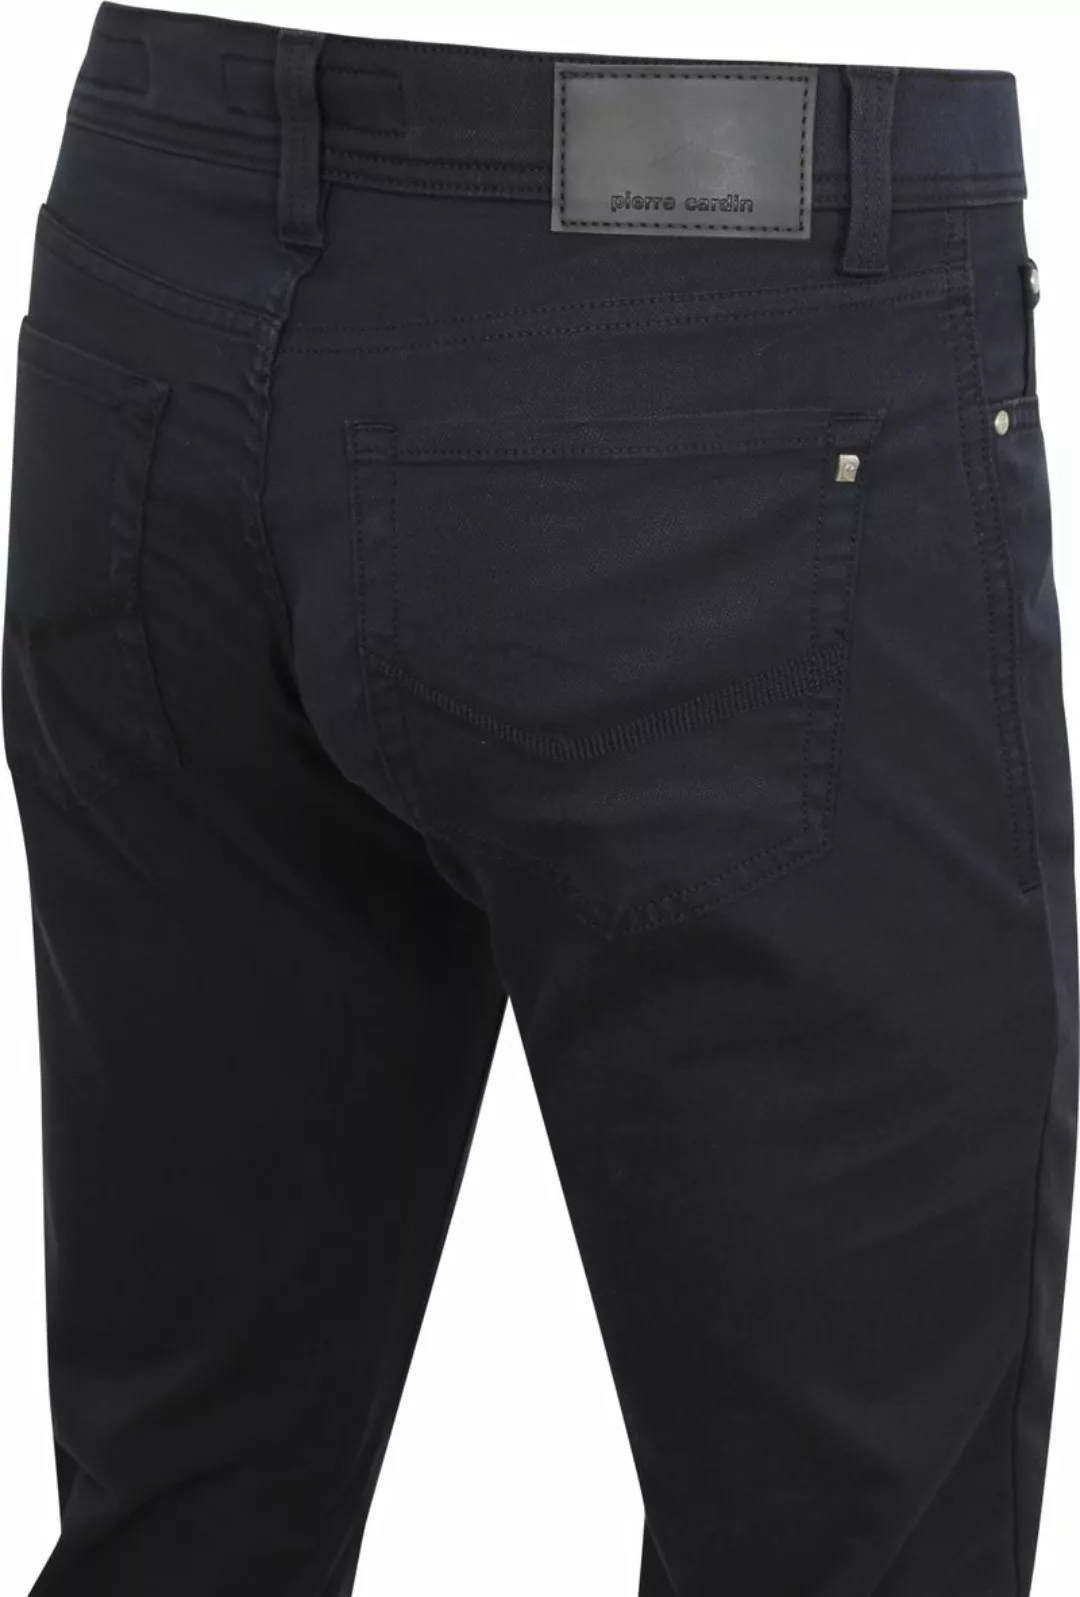 Pierre Cardin Jeans Zukunft Flex Anthrazit - Größe W 40 - L 36 günstig online kaufen